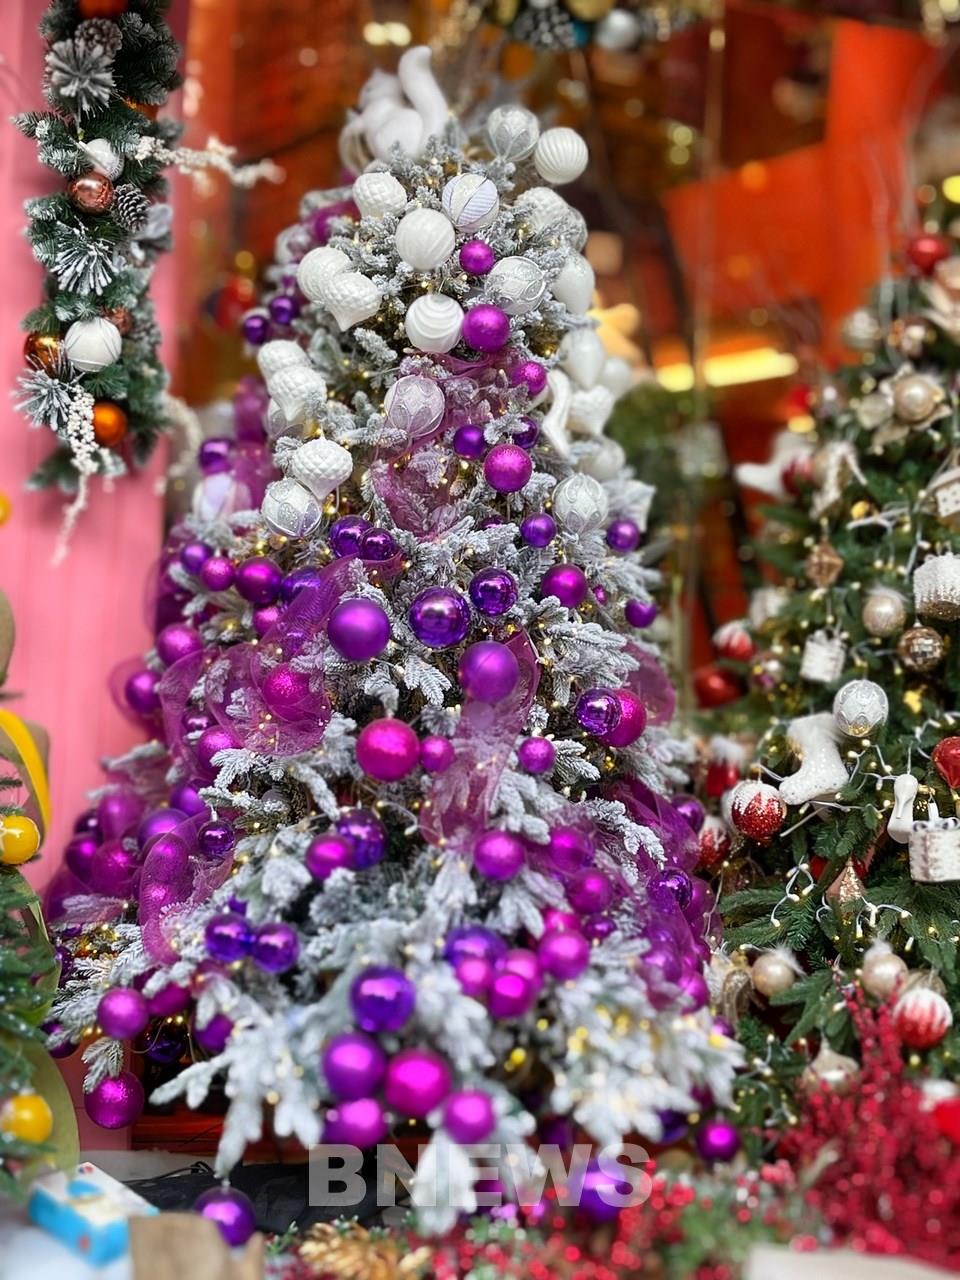 Phụ kiện trang trí: Đã sẵn sàng để trang trí cho mùa Giáng sinh? Hãy đến và tìm các phụ kiện trang trí giáng sinh độc đáo và tuyệt vời nhất. Từ đèn led đến cây thông, chúng tôi cung cấp tất cả những gì bạn cần để tạo nên không khí Giáng sinh thật đẹp và ấm áp.